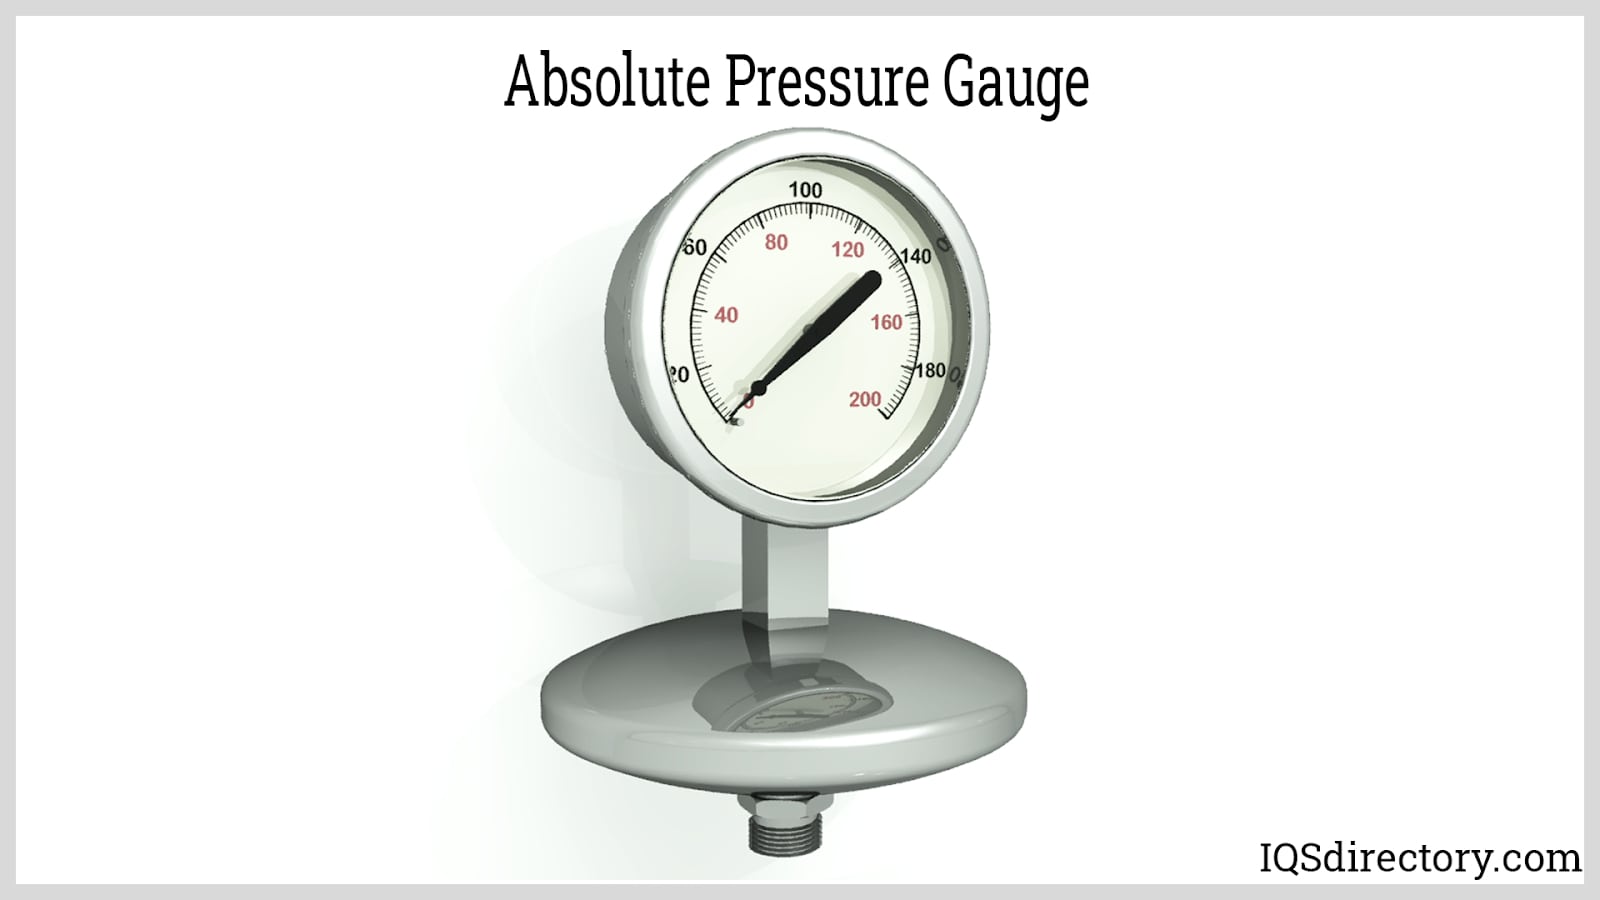 https://www.iqsdirectory.com/articles/pressure-gauge/absolute-pressure-gauge.jpg